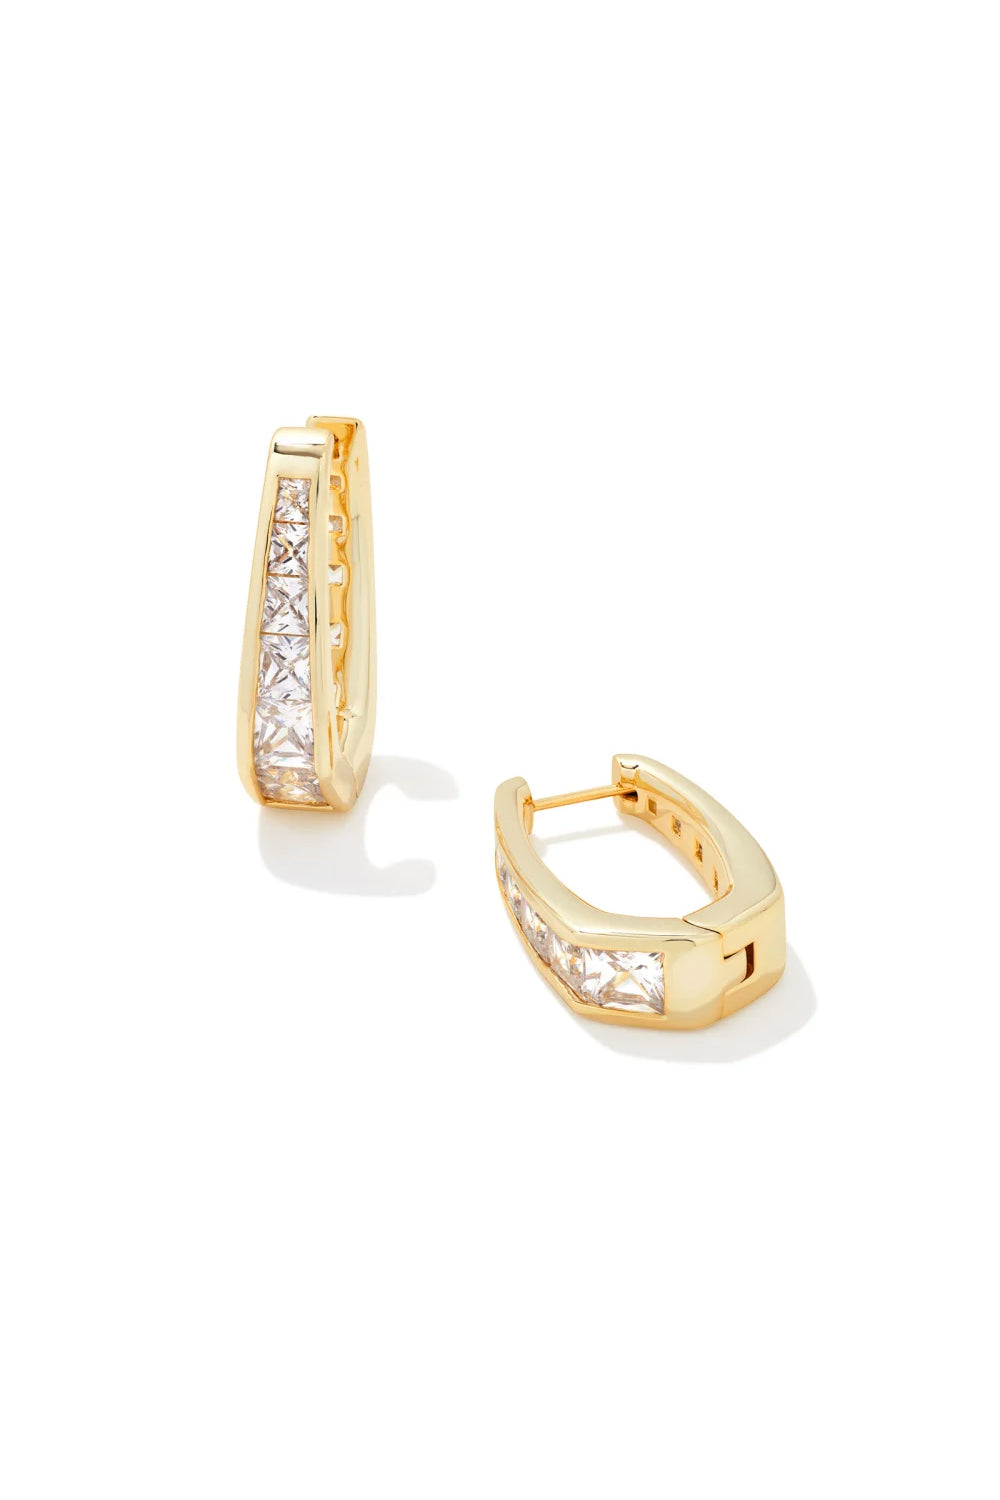 Kendra Scott: Parker Gold Hoop Earrings - White Crystal | Makk Fashions